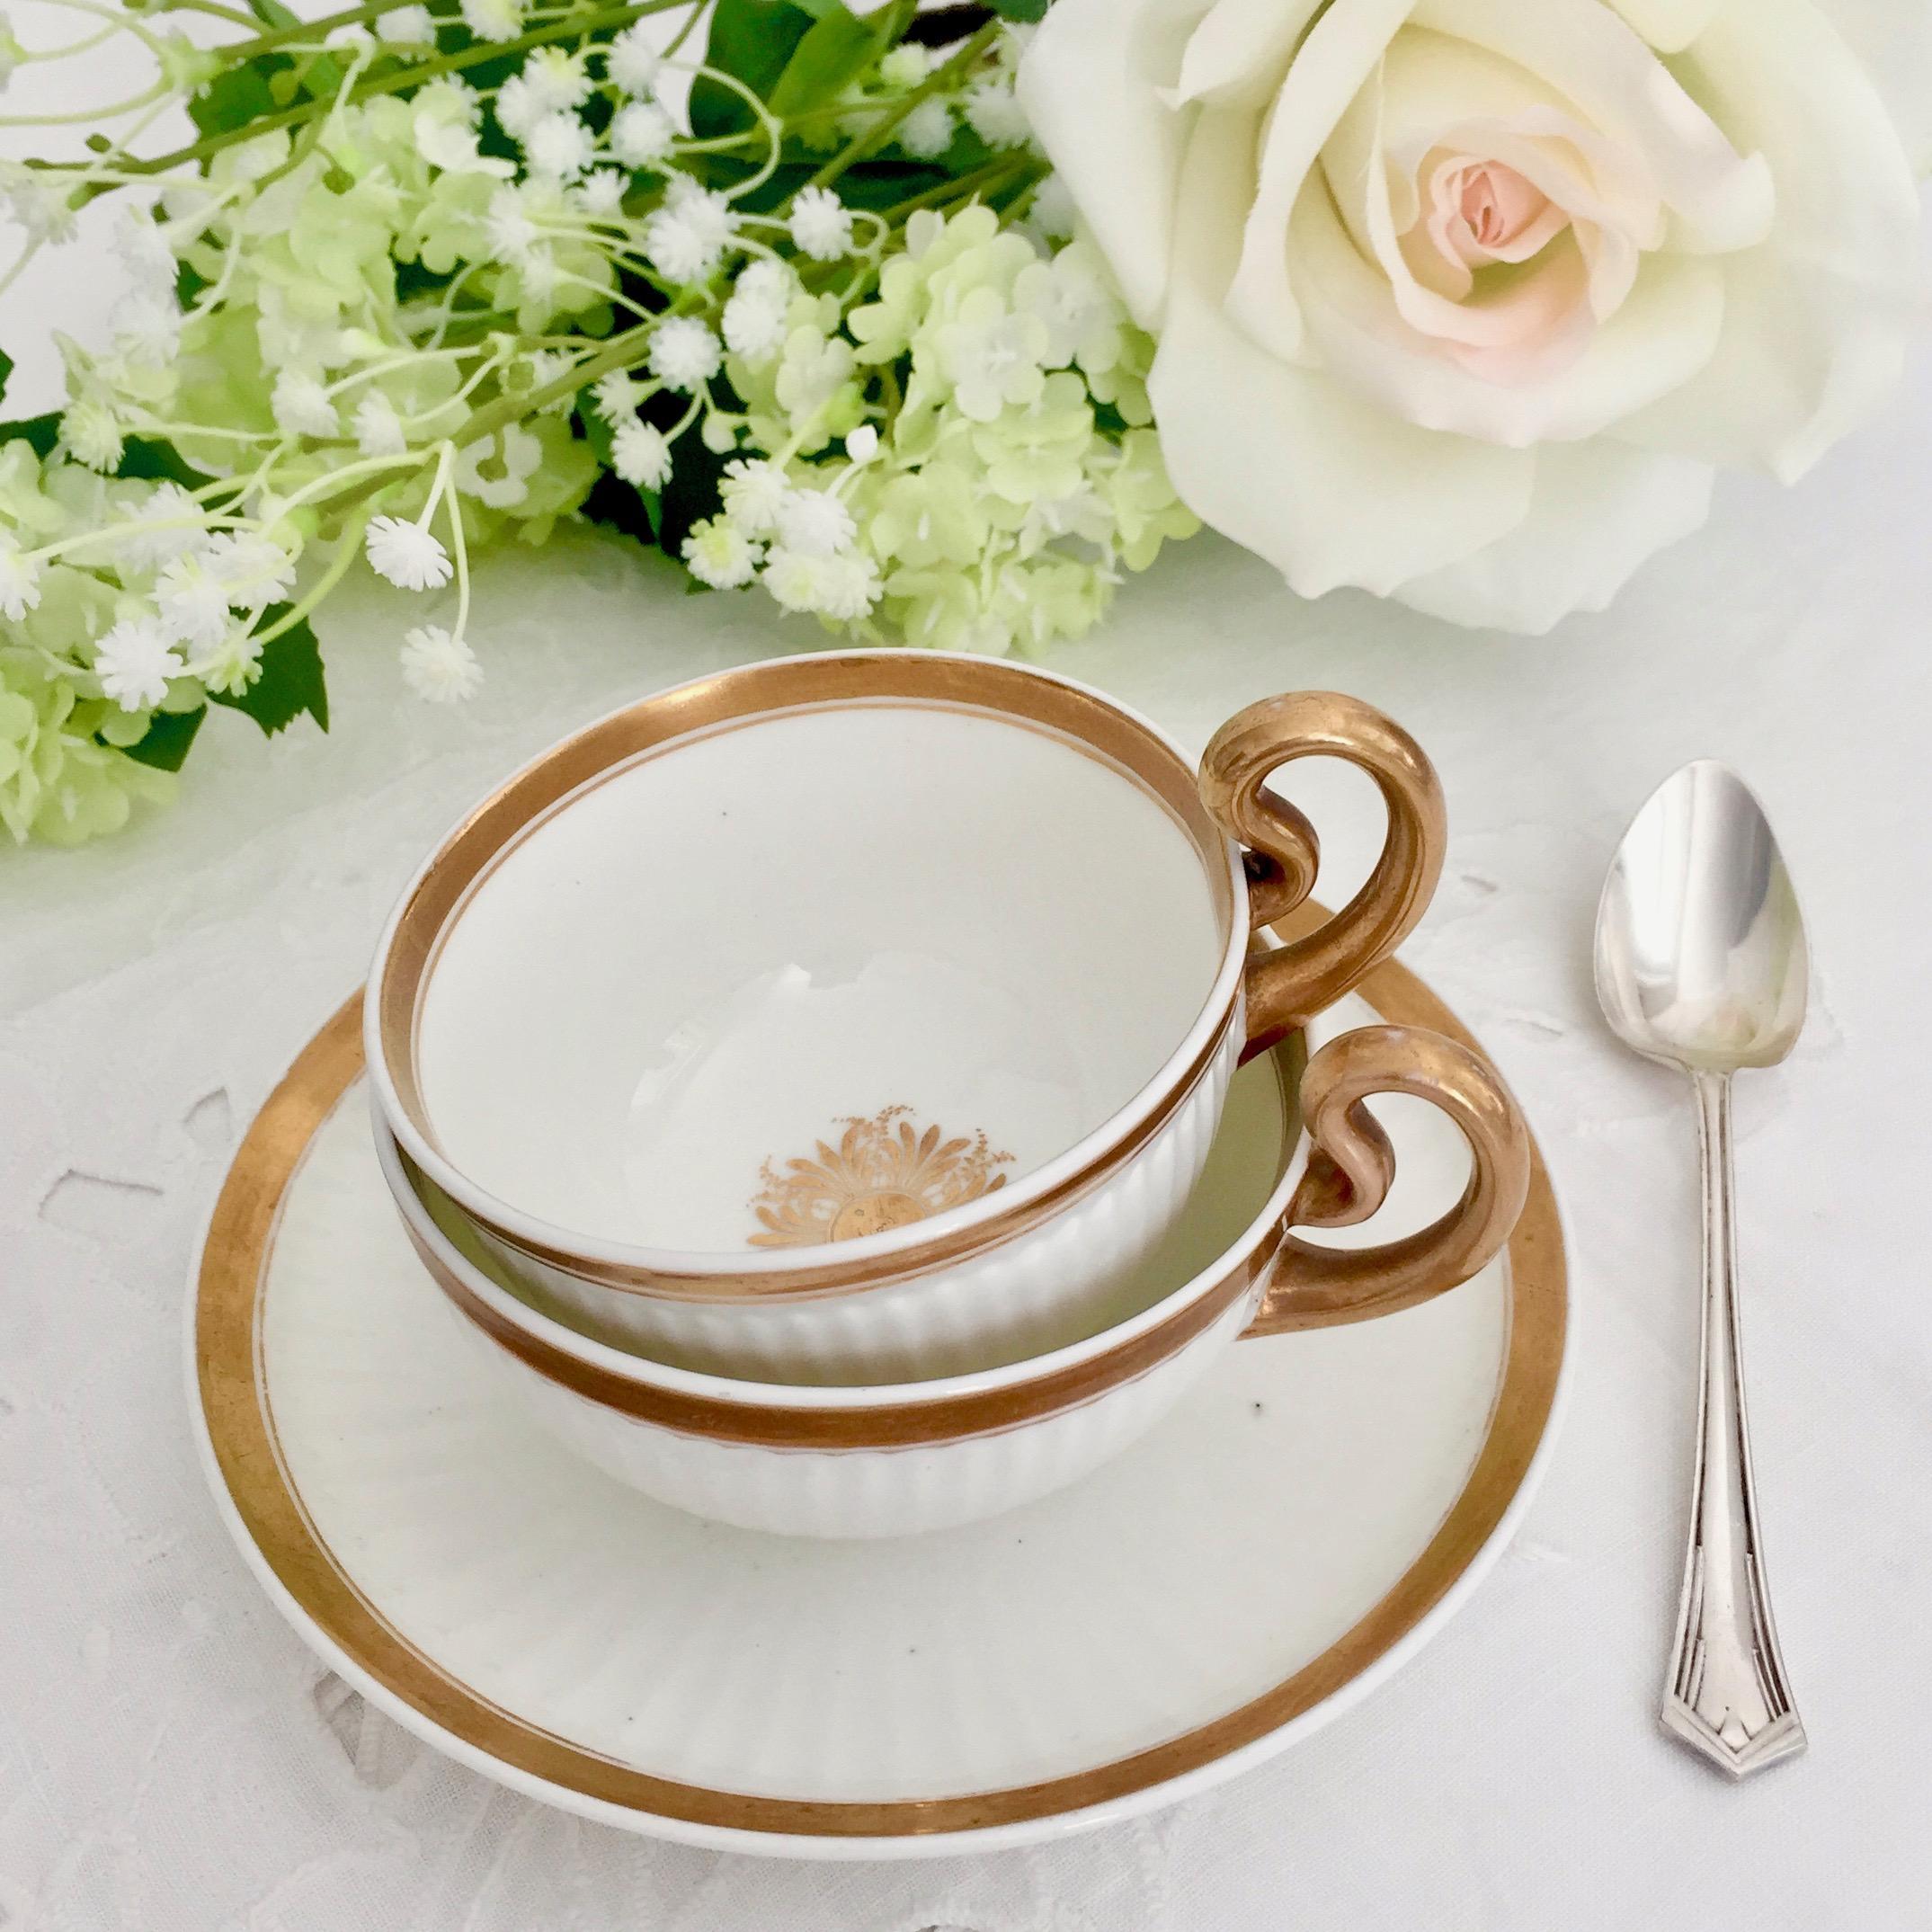 Nous vous proposons un magnifique service à thé en porcelaine fabriqué par Swansea vers 1820, c'est-à-dire à l'époque de la Régence. L'ensemble se compose d'une tasse à thé décorée en blanc et doré et d'une plus grande 